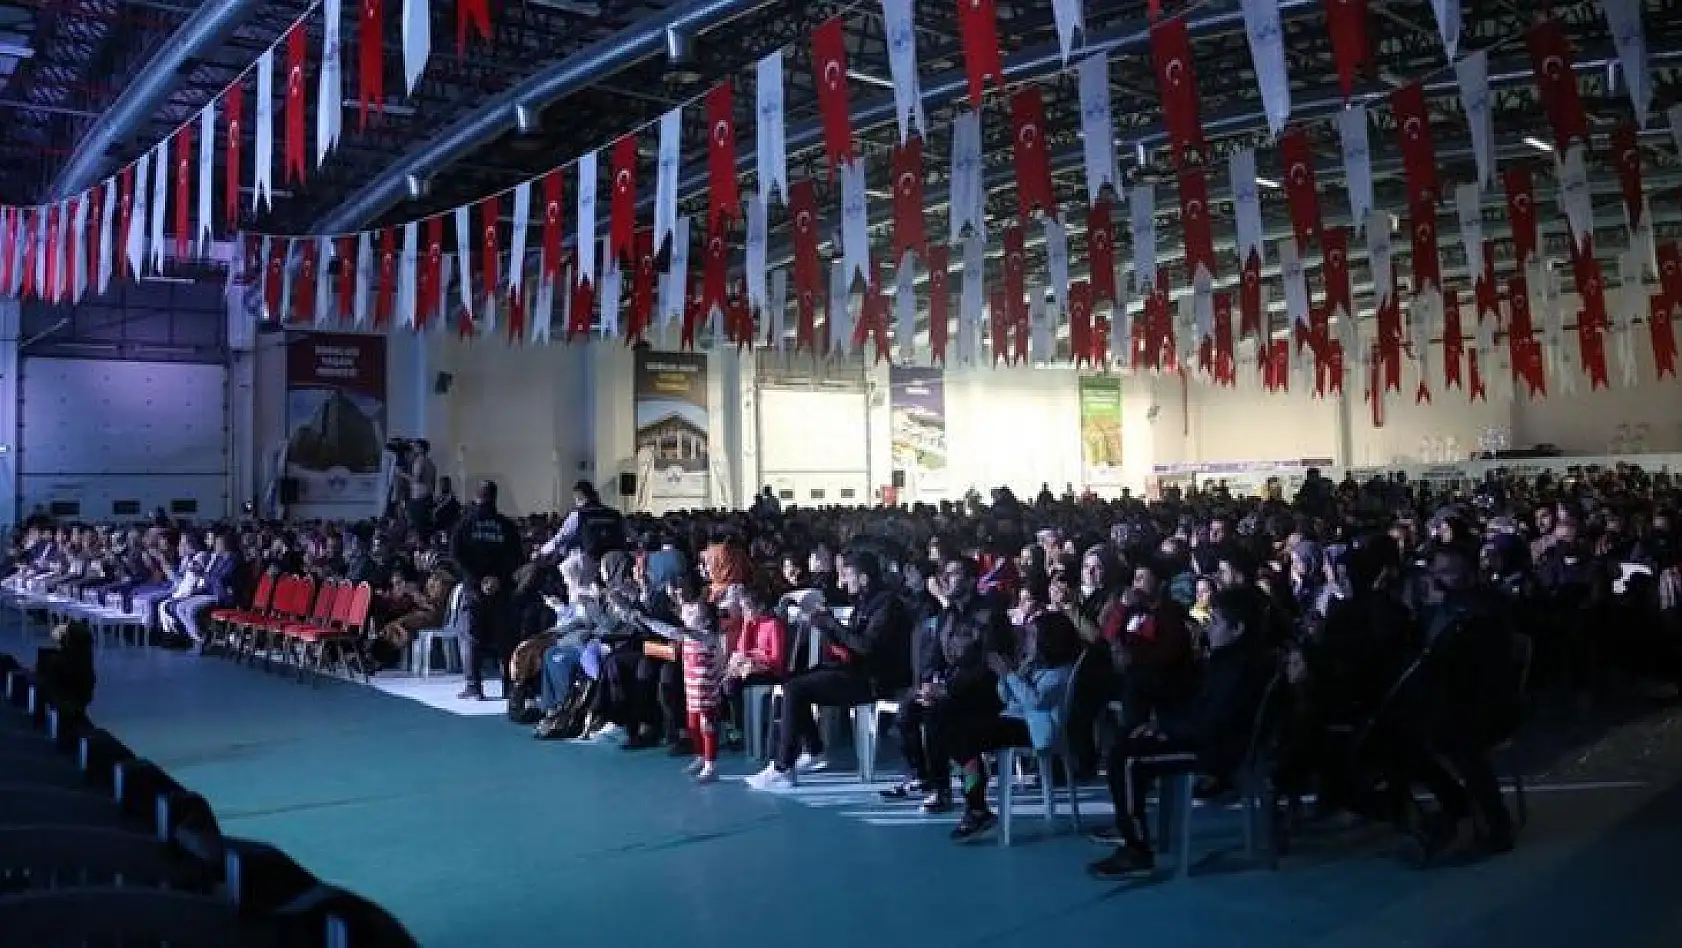 Elazığ Belediyesi Ramazan Programlarının İçeriğini Zenginleştirdi